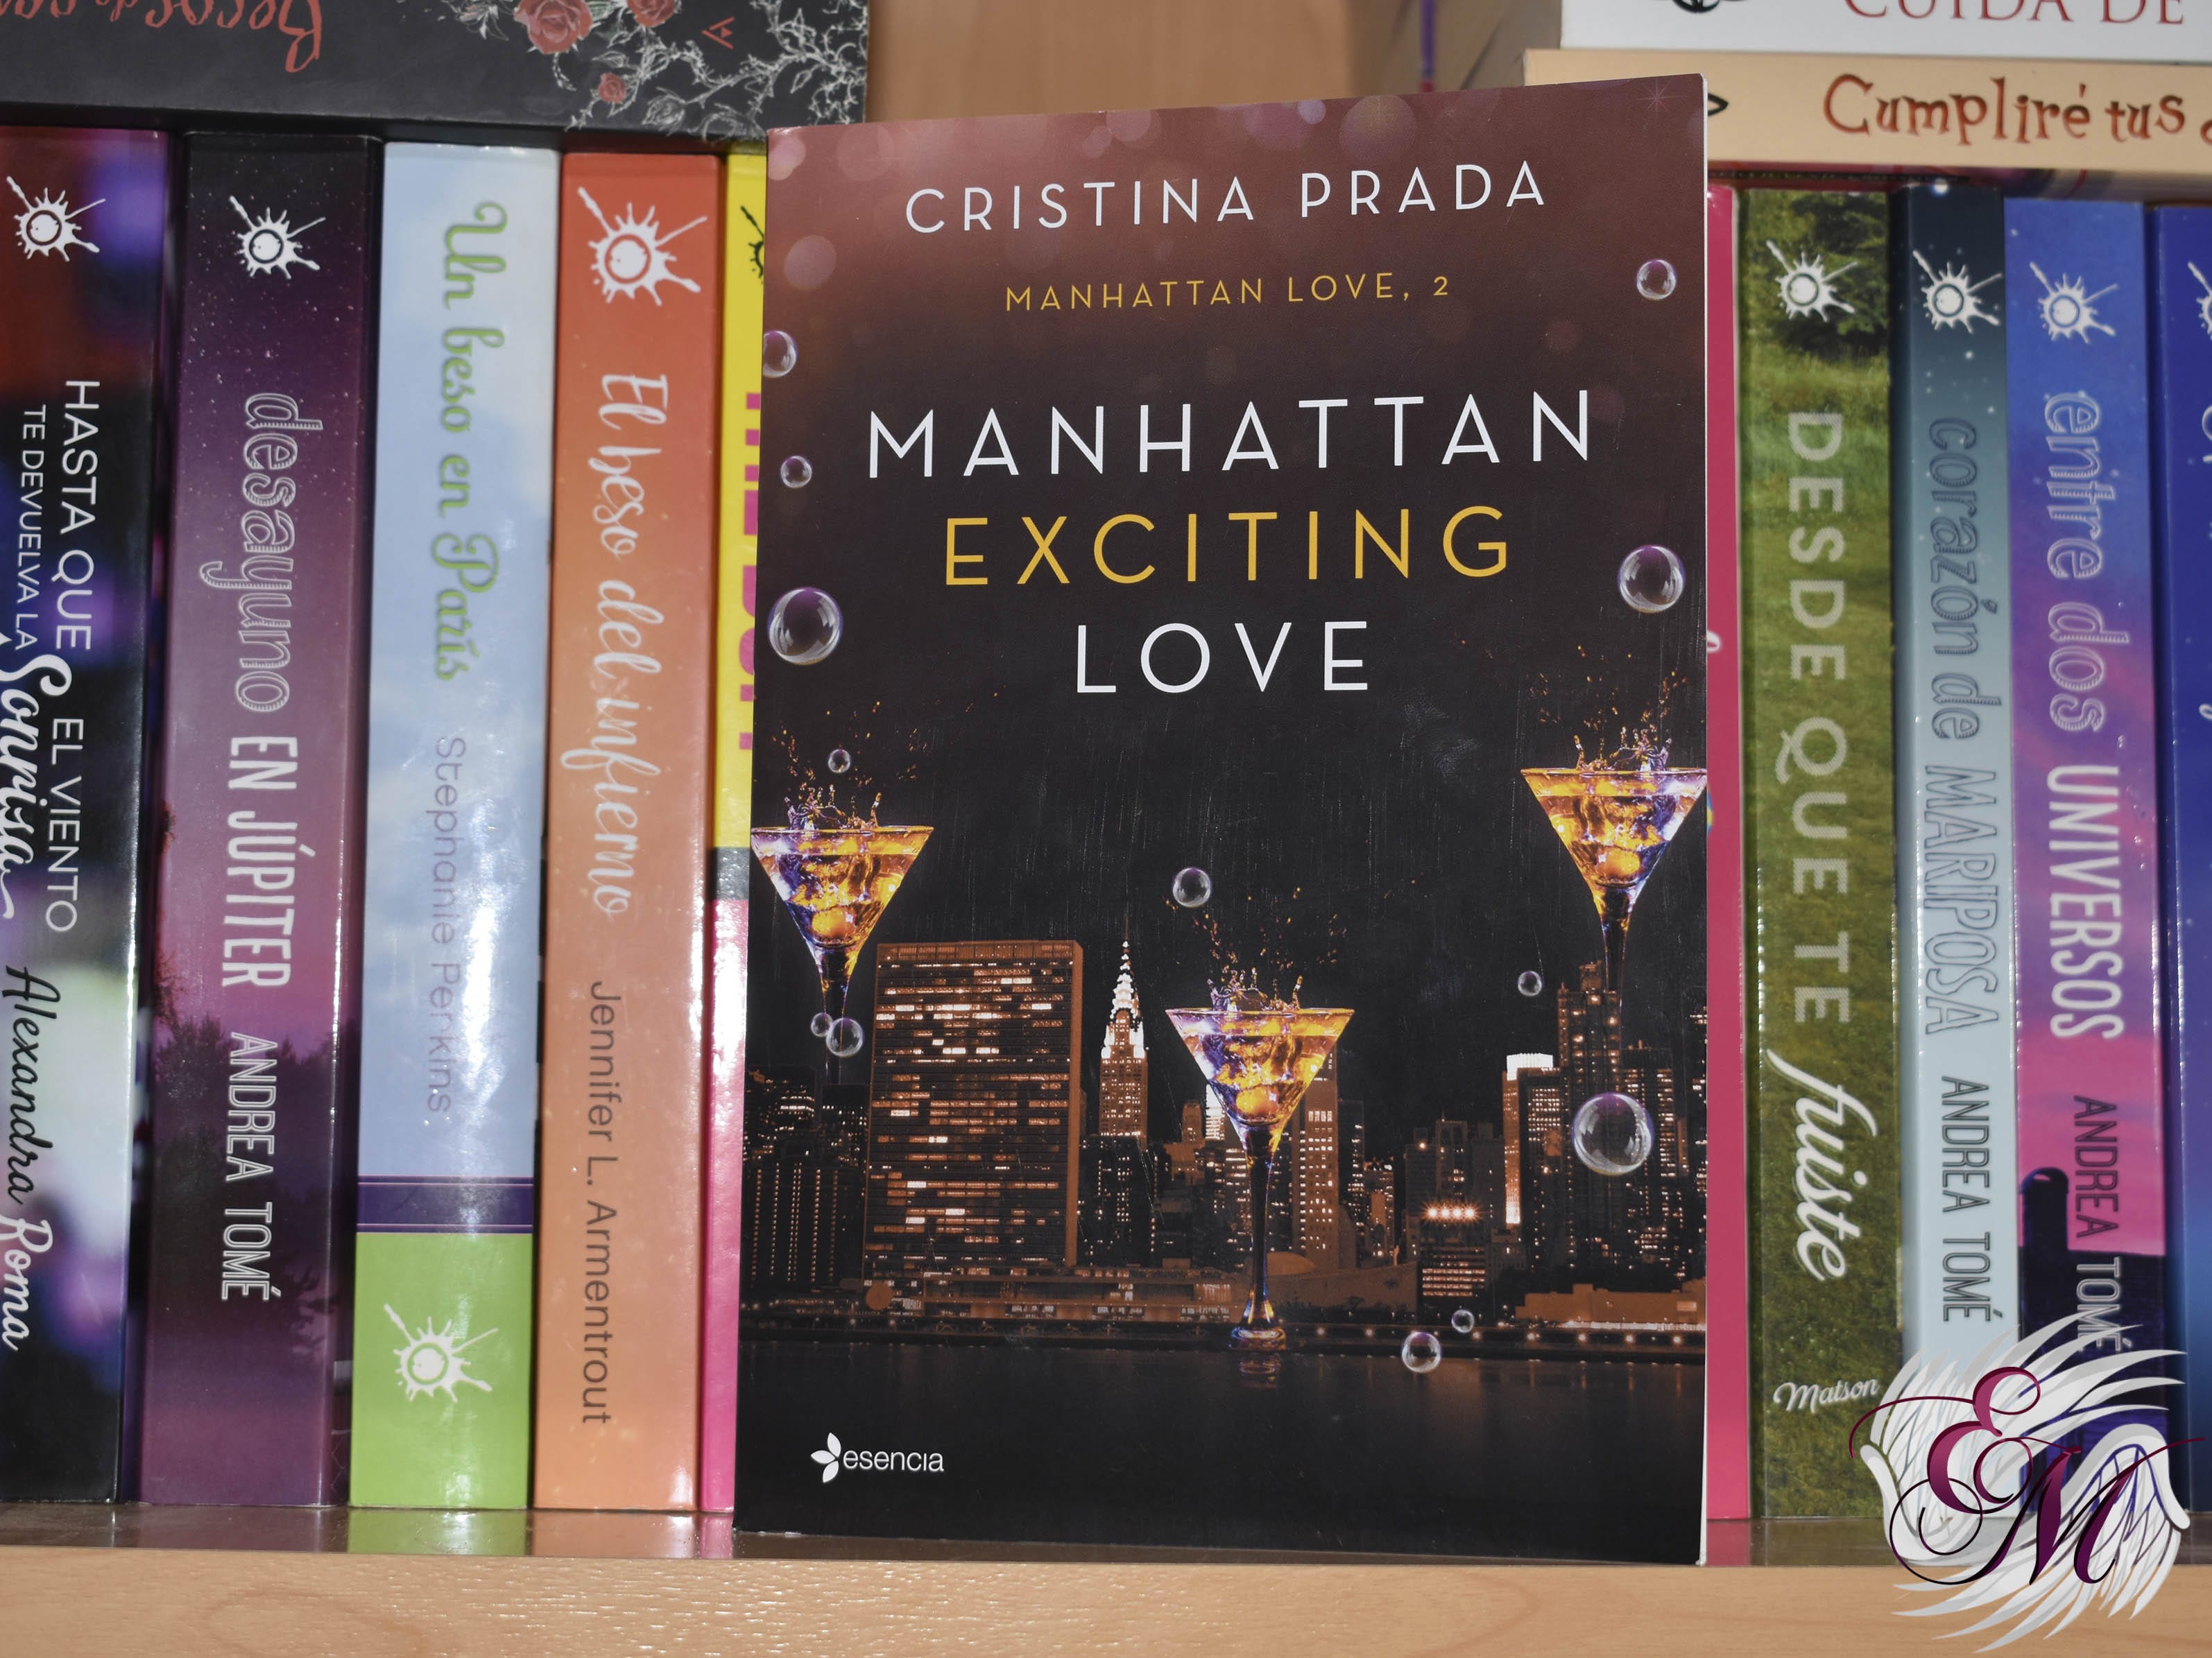 Manhattan exciting love, de Cristina Prada - Reseña